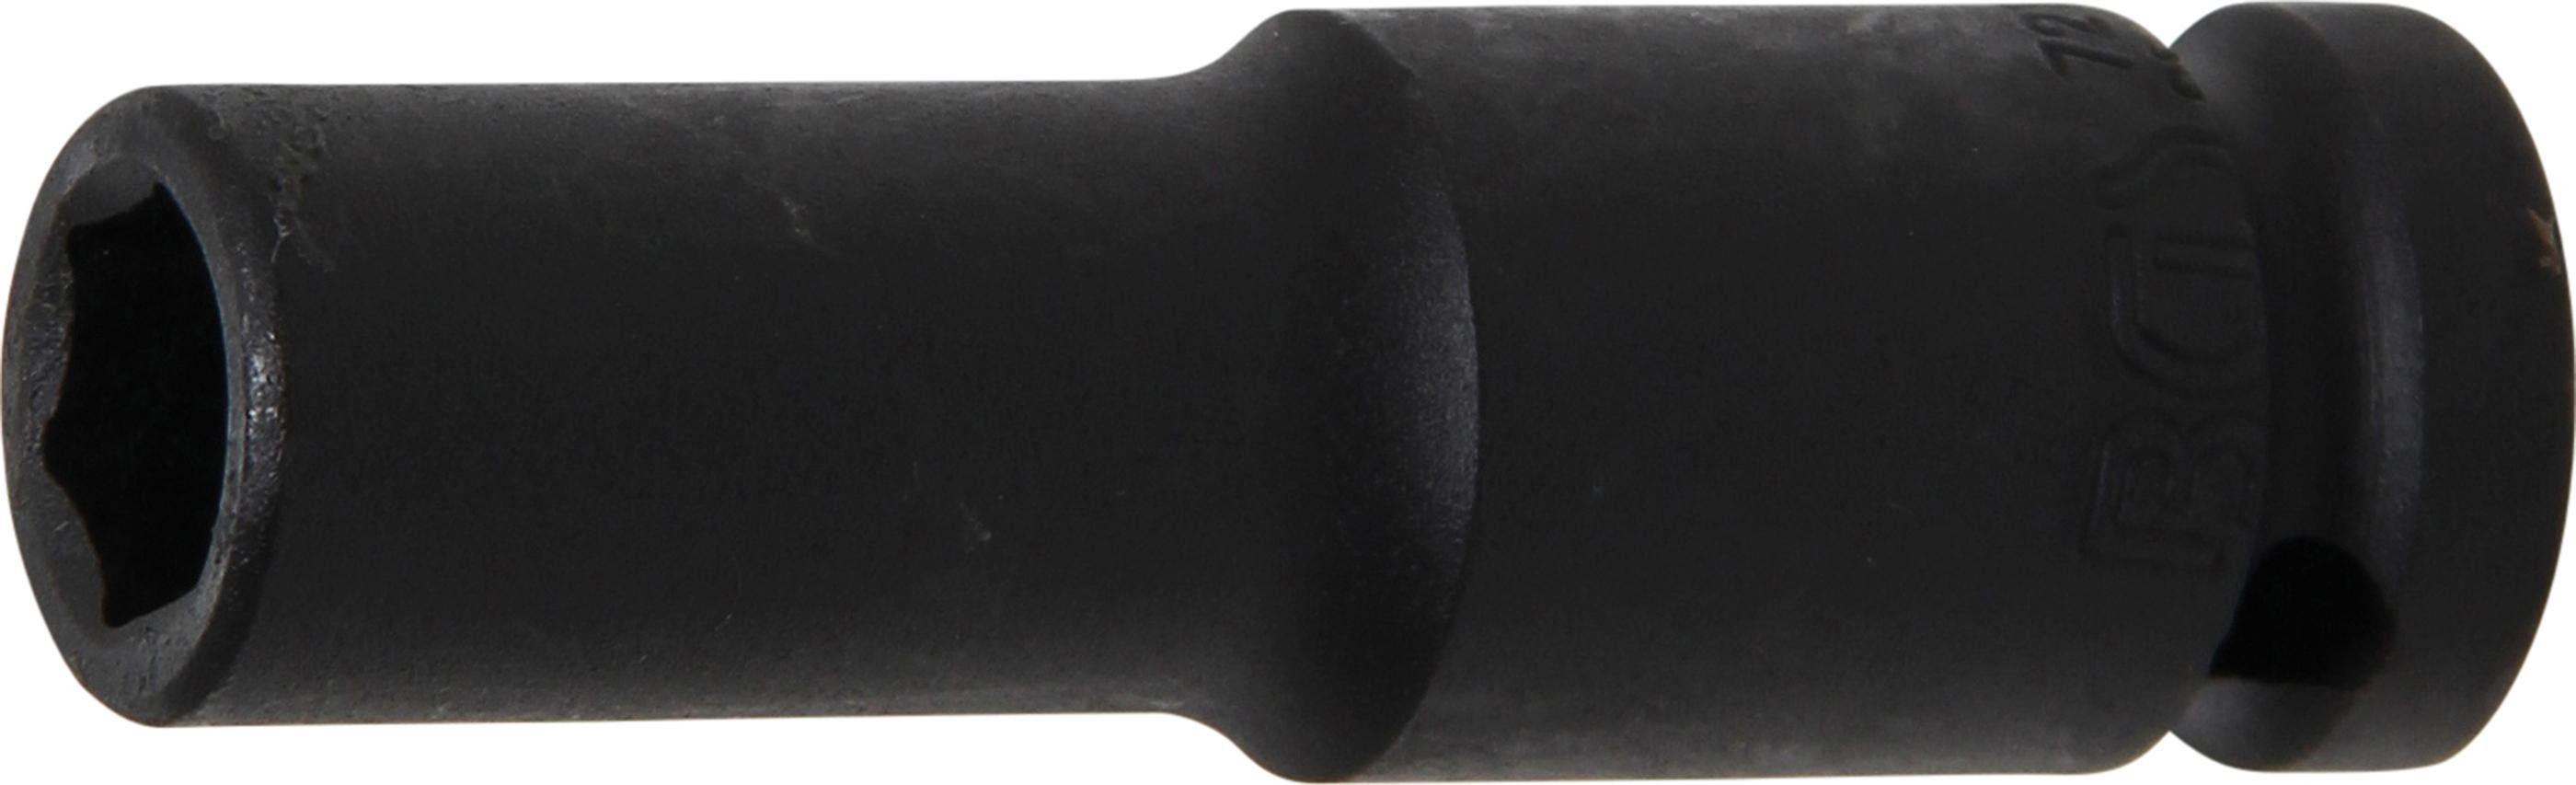 BGS technic Steckschlüssel Kraft-Steckschlüssel-Einsatz Sechskant, tief, Antrieb Innenvierkant 12,5 mm (1/2), SW 12 mm